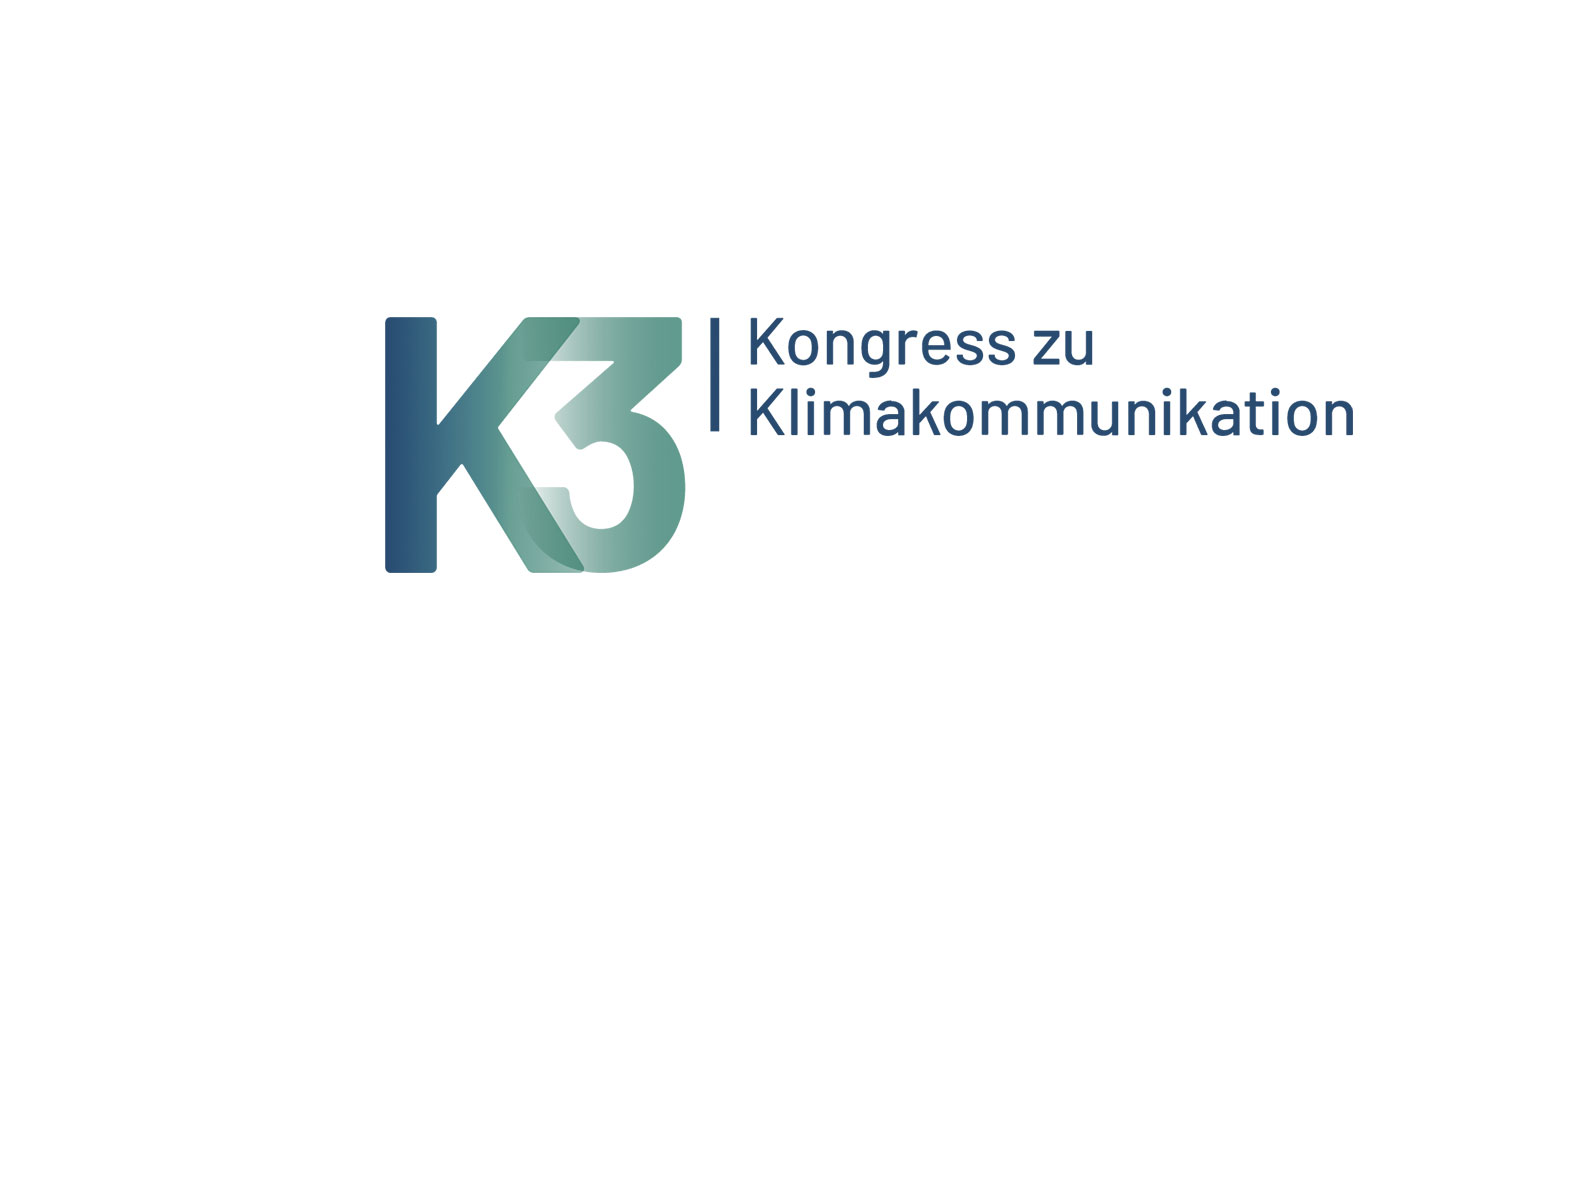 Neue Runde beim K3-Preis für Klimakommunikation, jetzt bewerben!